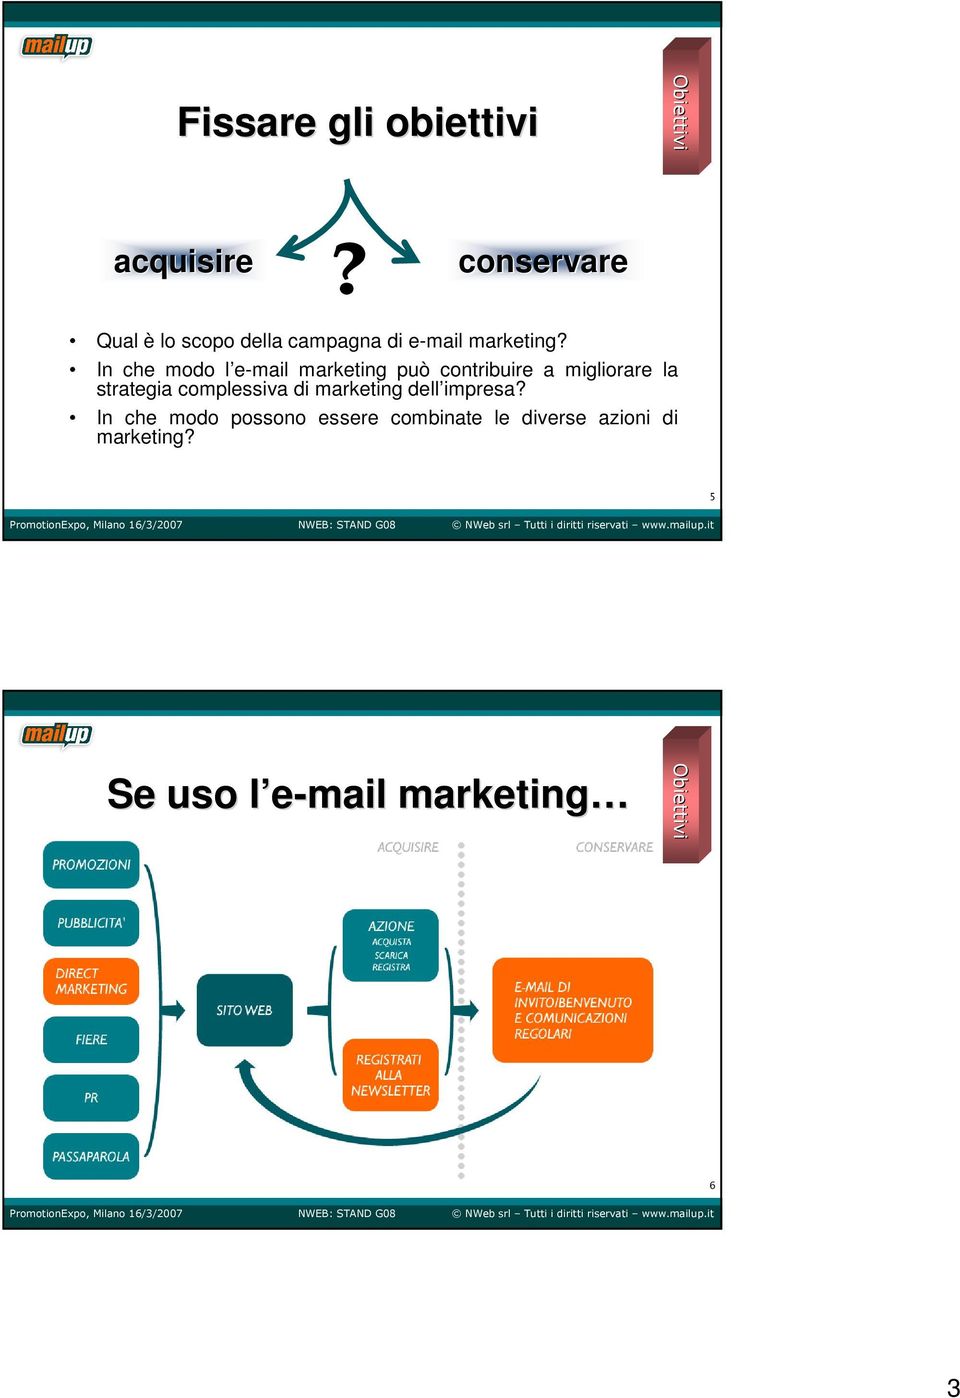 In che modo l e-mail marketing può contribuire a migliorare la strategia